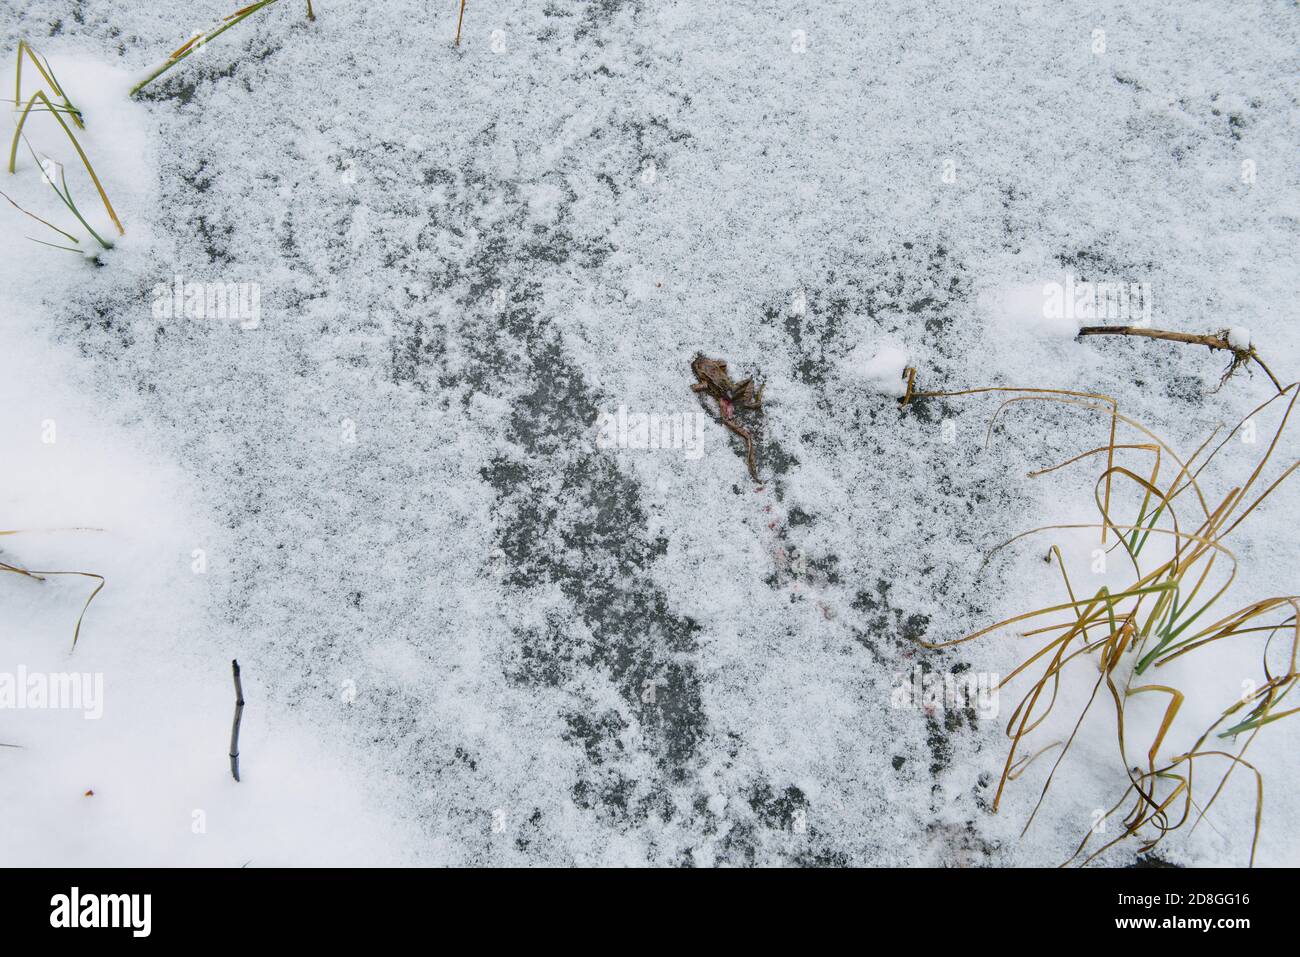 Rana morta peccata da uccelli sulla superficie di un lago ghiacciato. Foto Stock